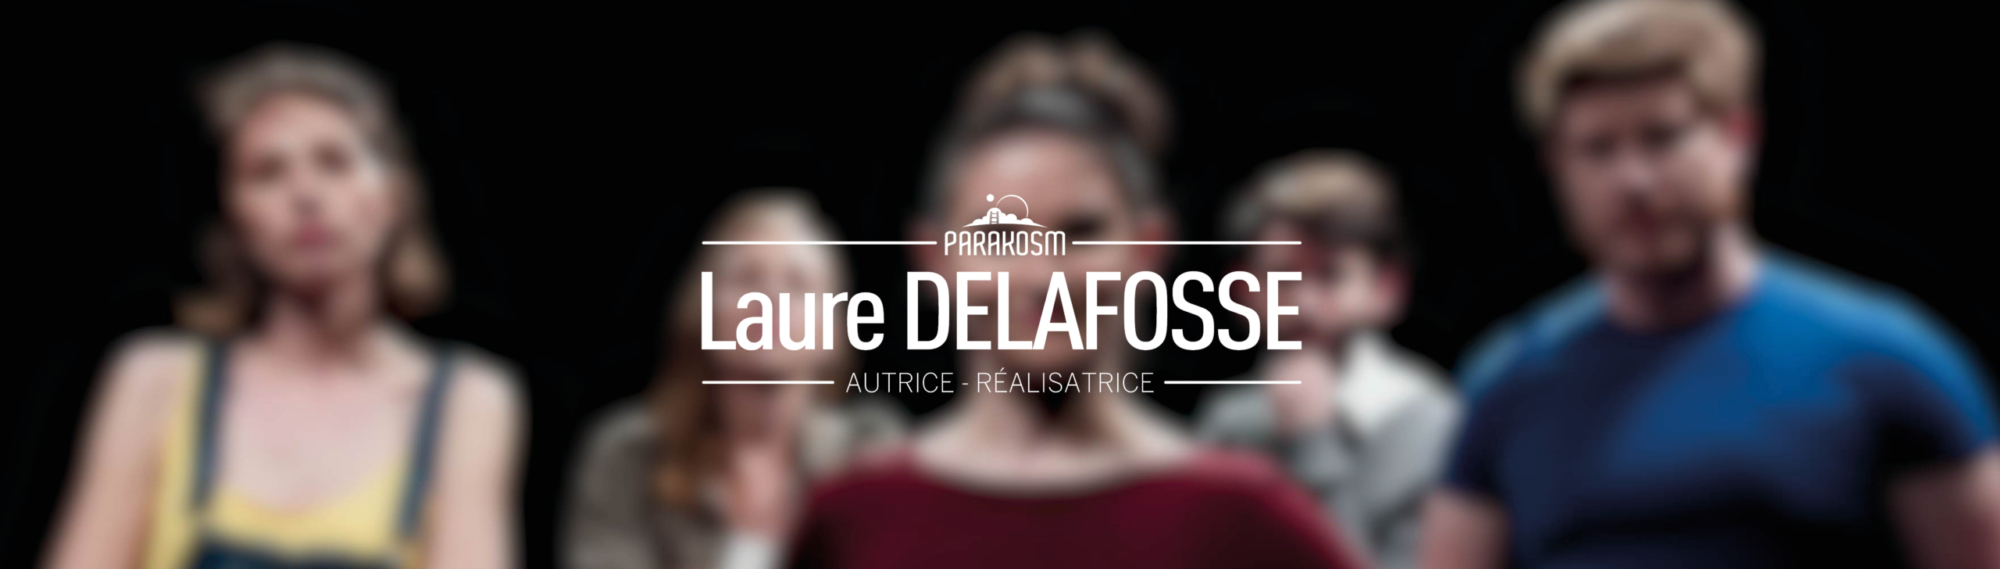 Laure Delafosse